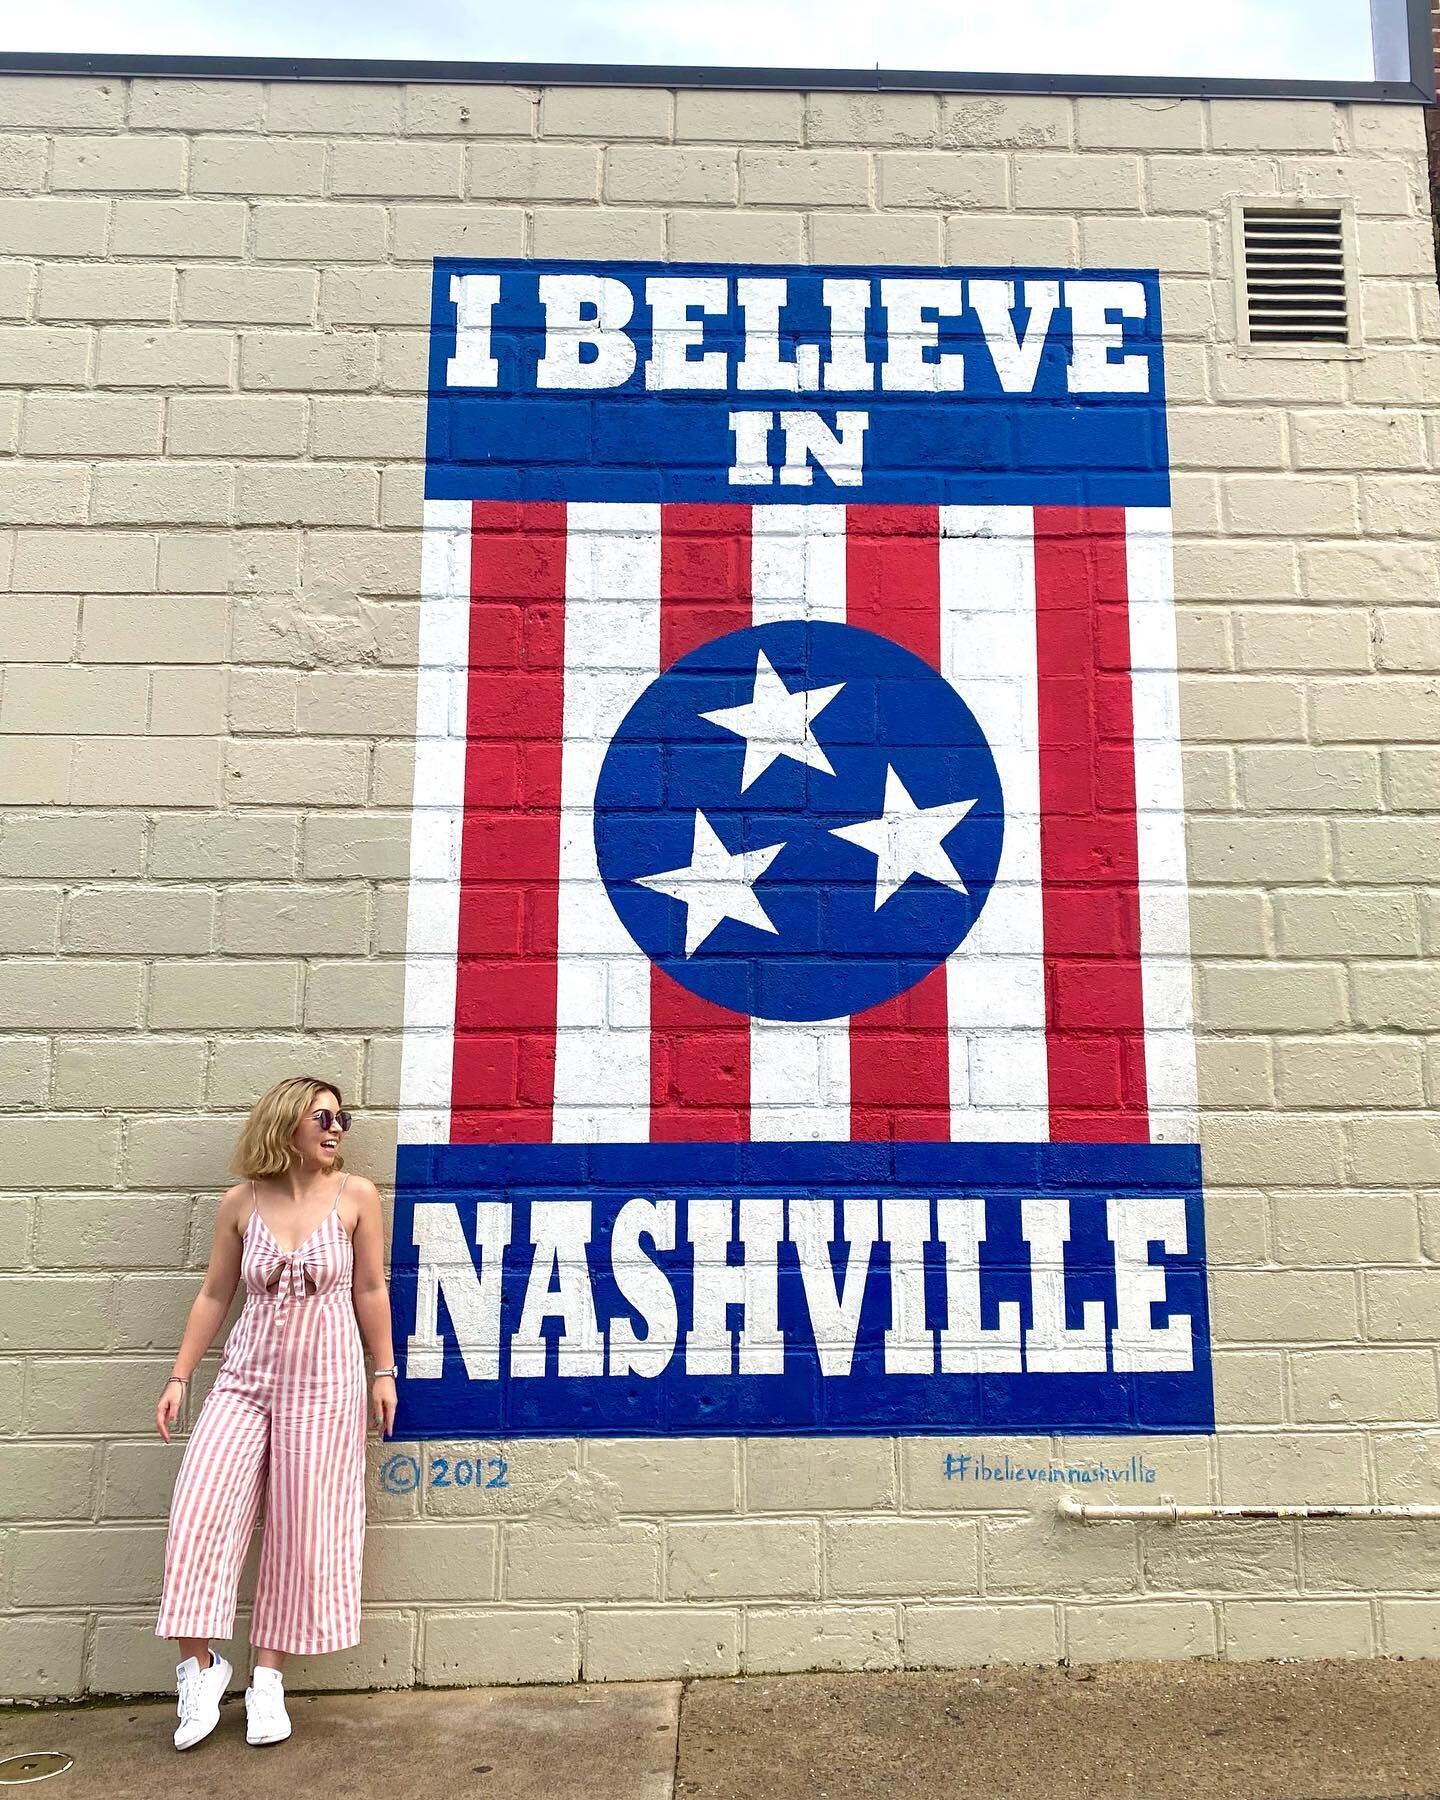 🎶Do you believe in Nashville?

Swipe to help me decide🤠
💙For 1
❤️For 2

#nashville #tennessee #ibelieveinnashville #freedom #usa